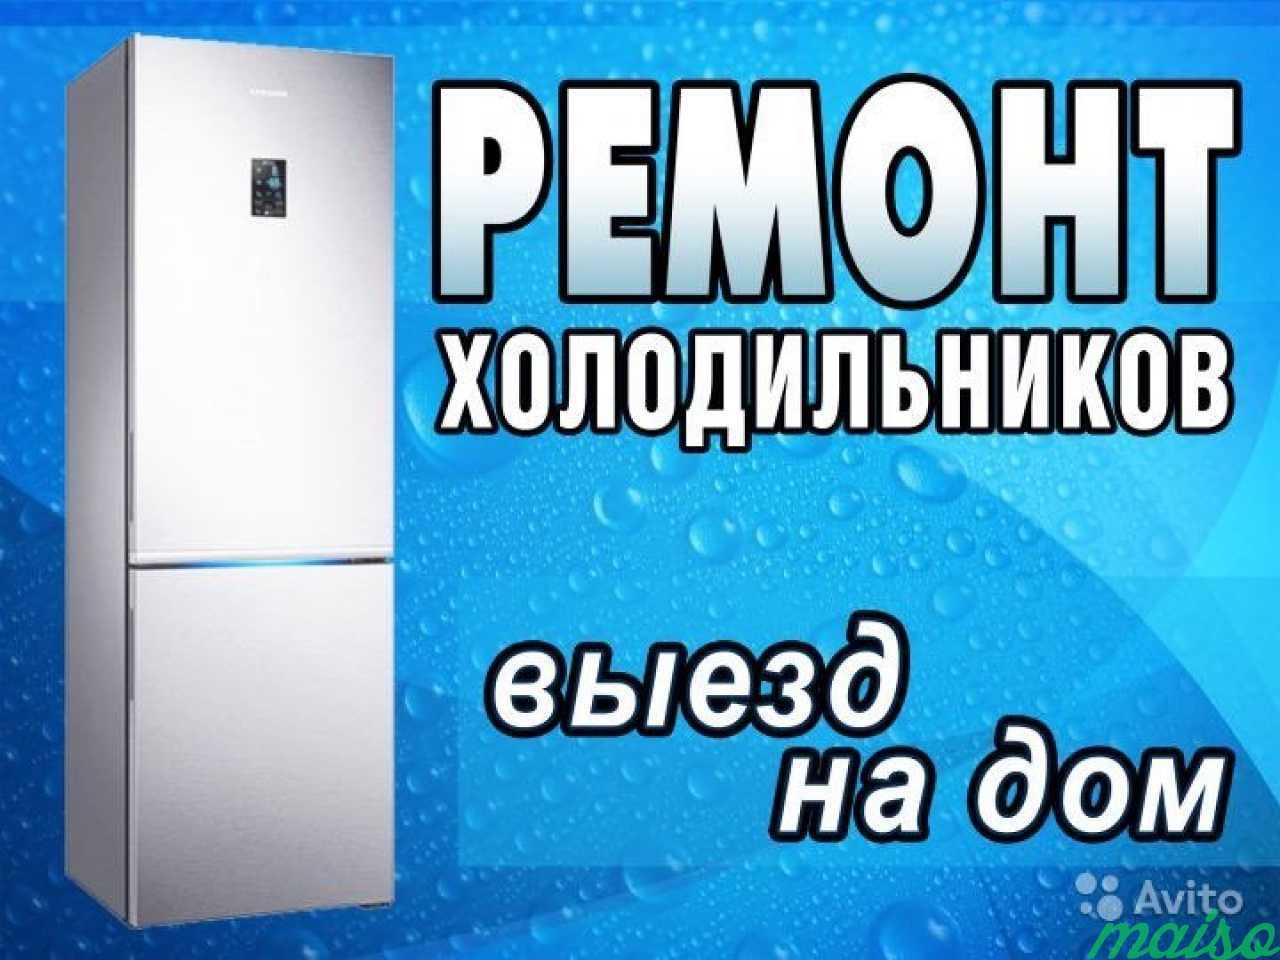 Номер телефона ремонта холодильников на дому. Ремонт холодильников реклама. Реклама по ремонту холодильников. Ремонт холодильников на дому.